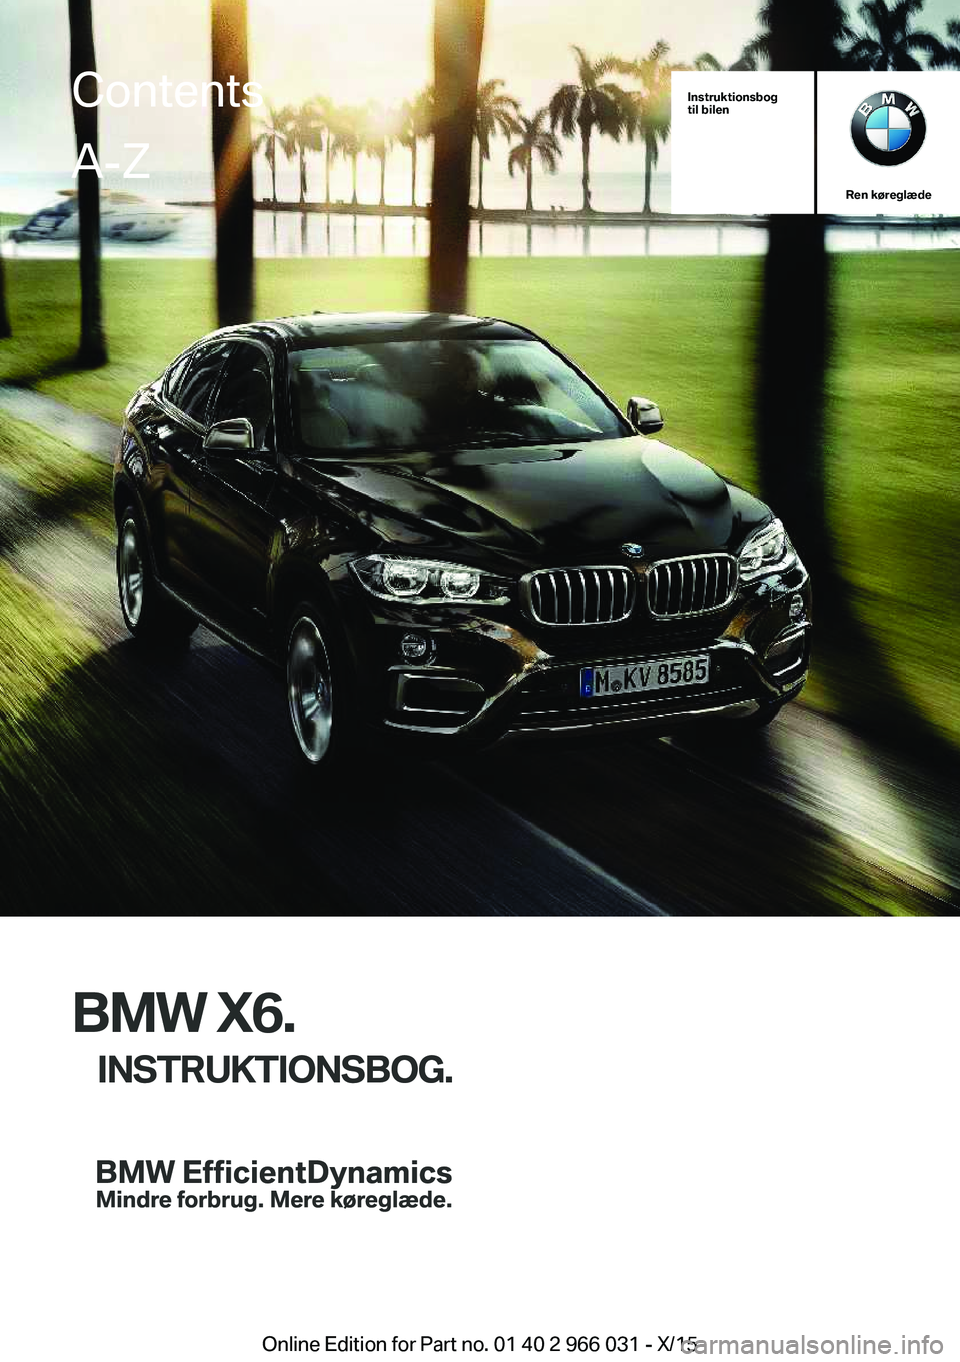 BMW X6 2016  InstruktionsbØger (in Danish) Instruktionsbog
til bilen
Ren køreglæde
BMW X6.
INSTRUKTIONSBOG.
ContentsA-Z
Online Edition for Part no. 01 40 2 966 031 - X/15   